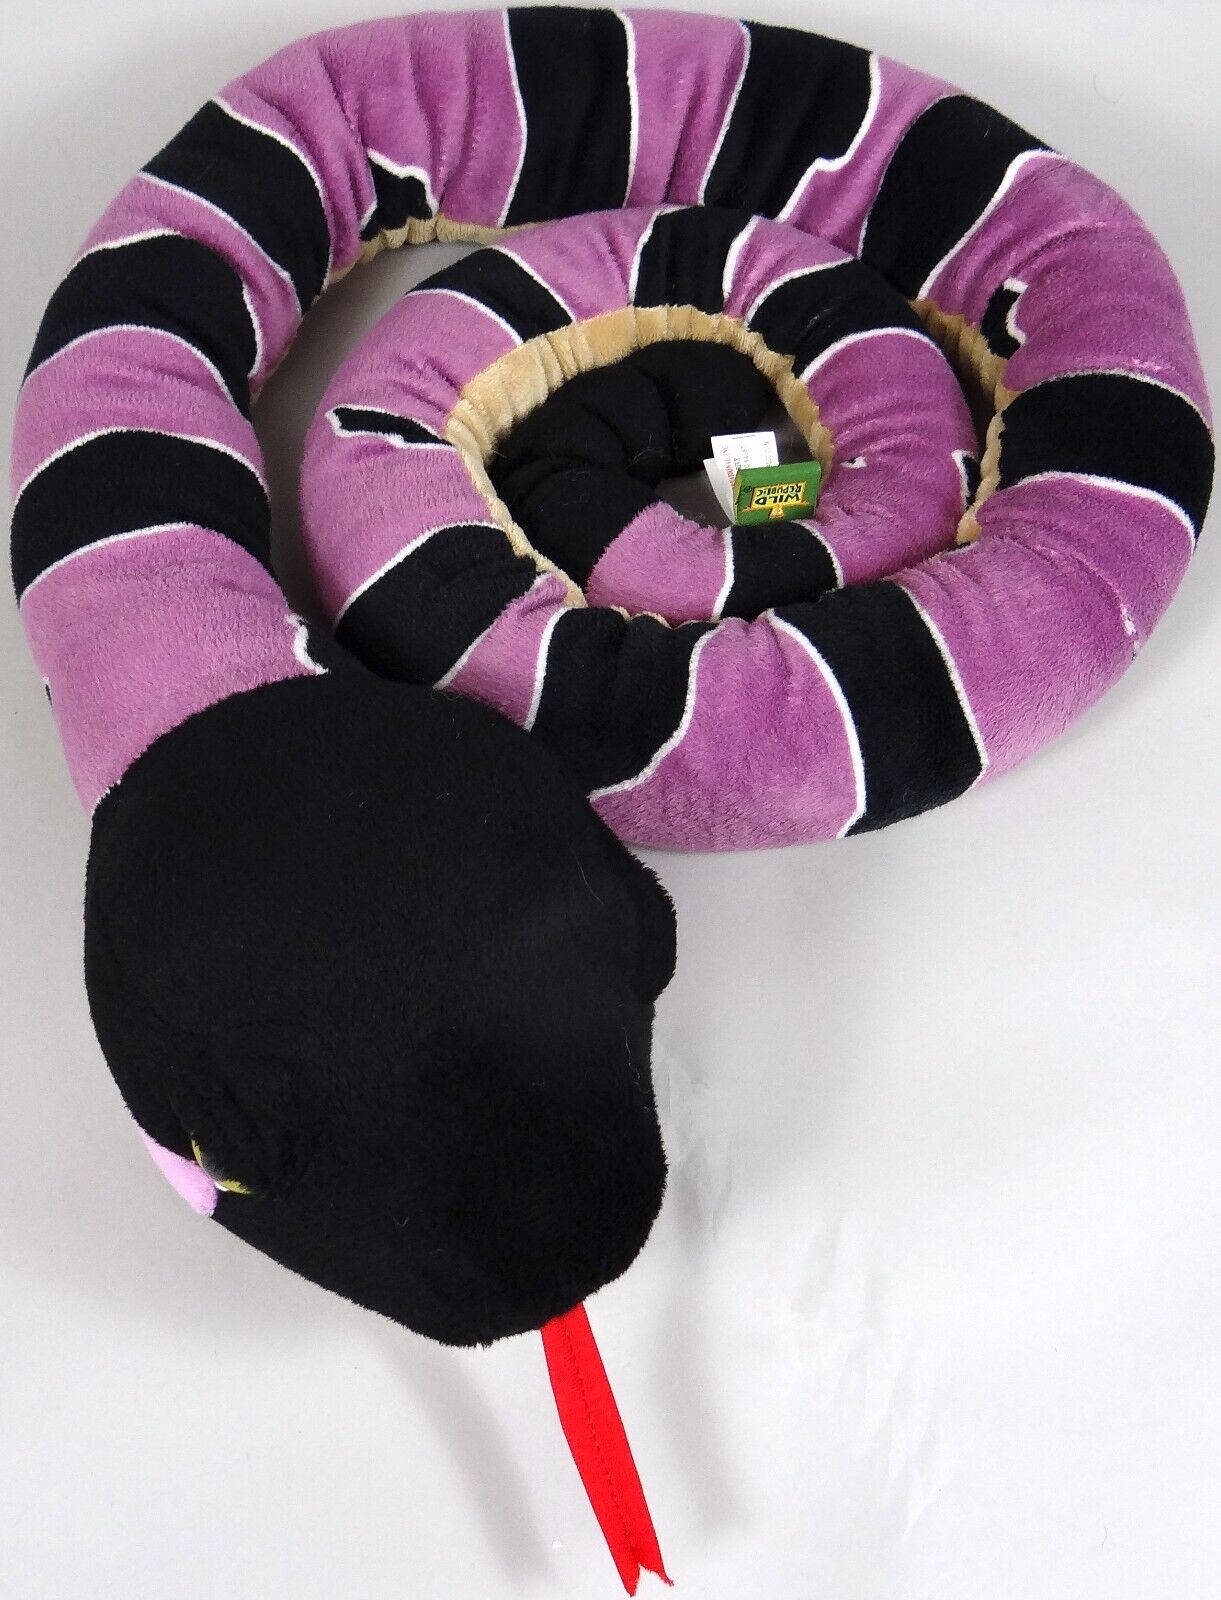 Wild Republic Plush Snake Timber Rattlesnake Stuffed Animal Toy Jumbo 70in 2014